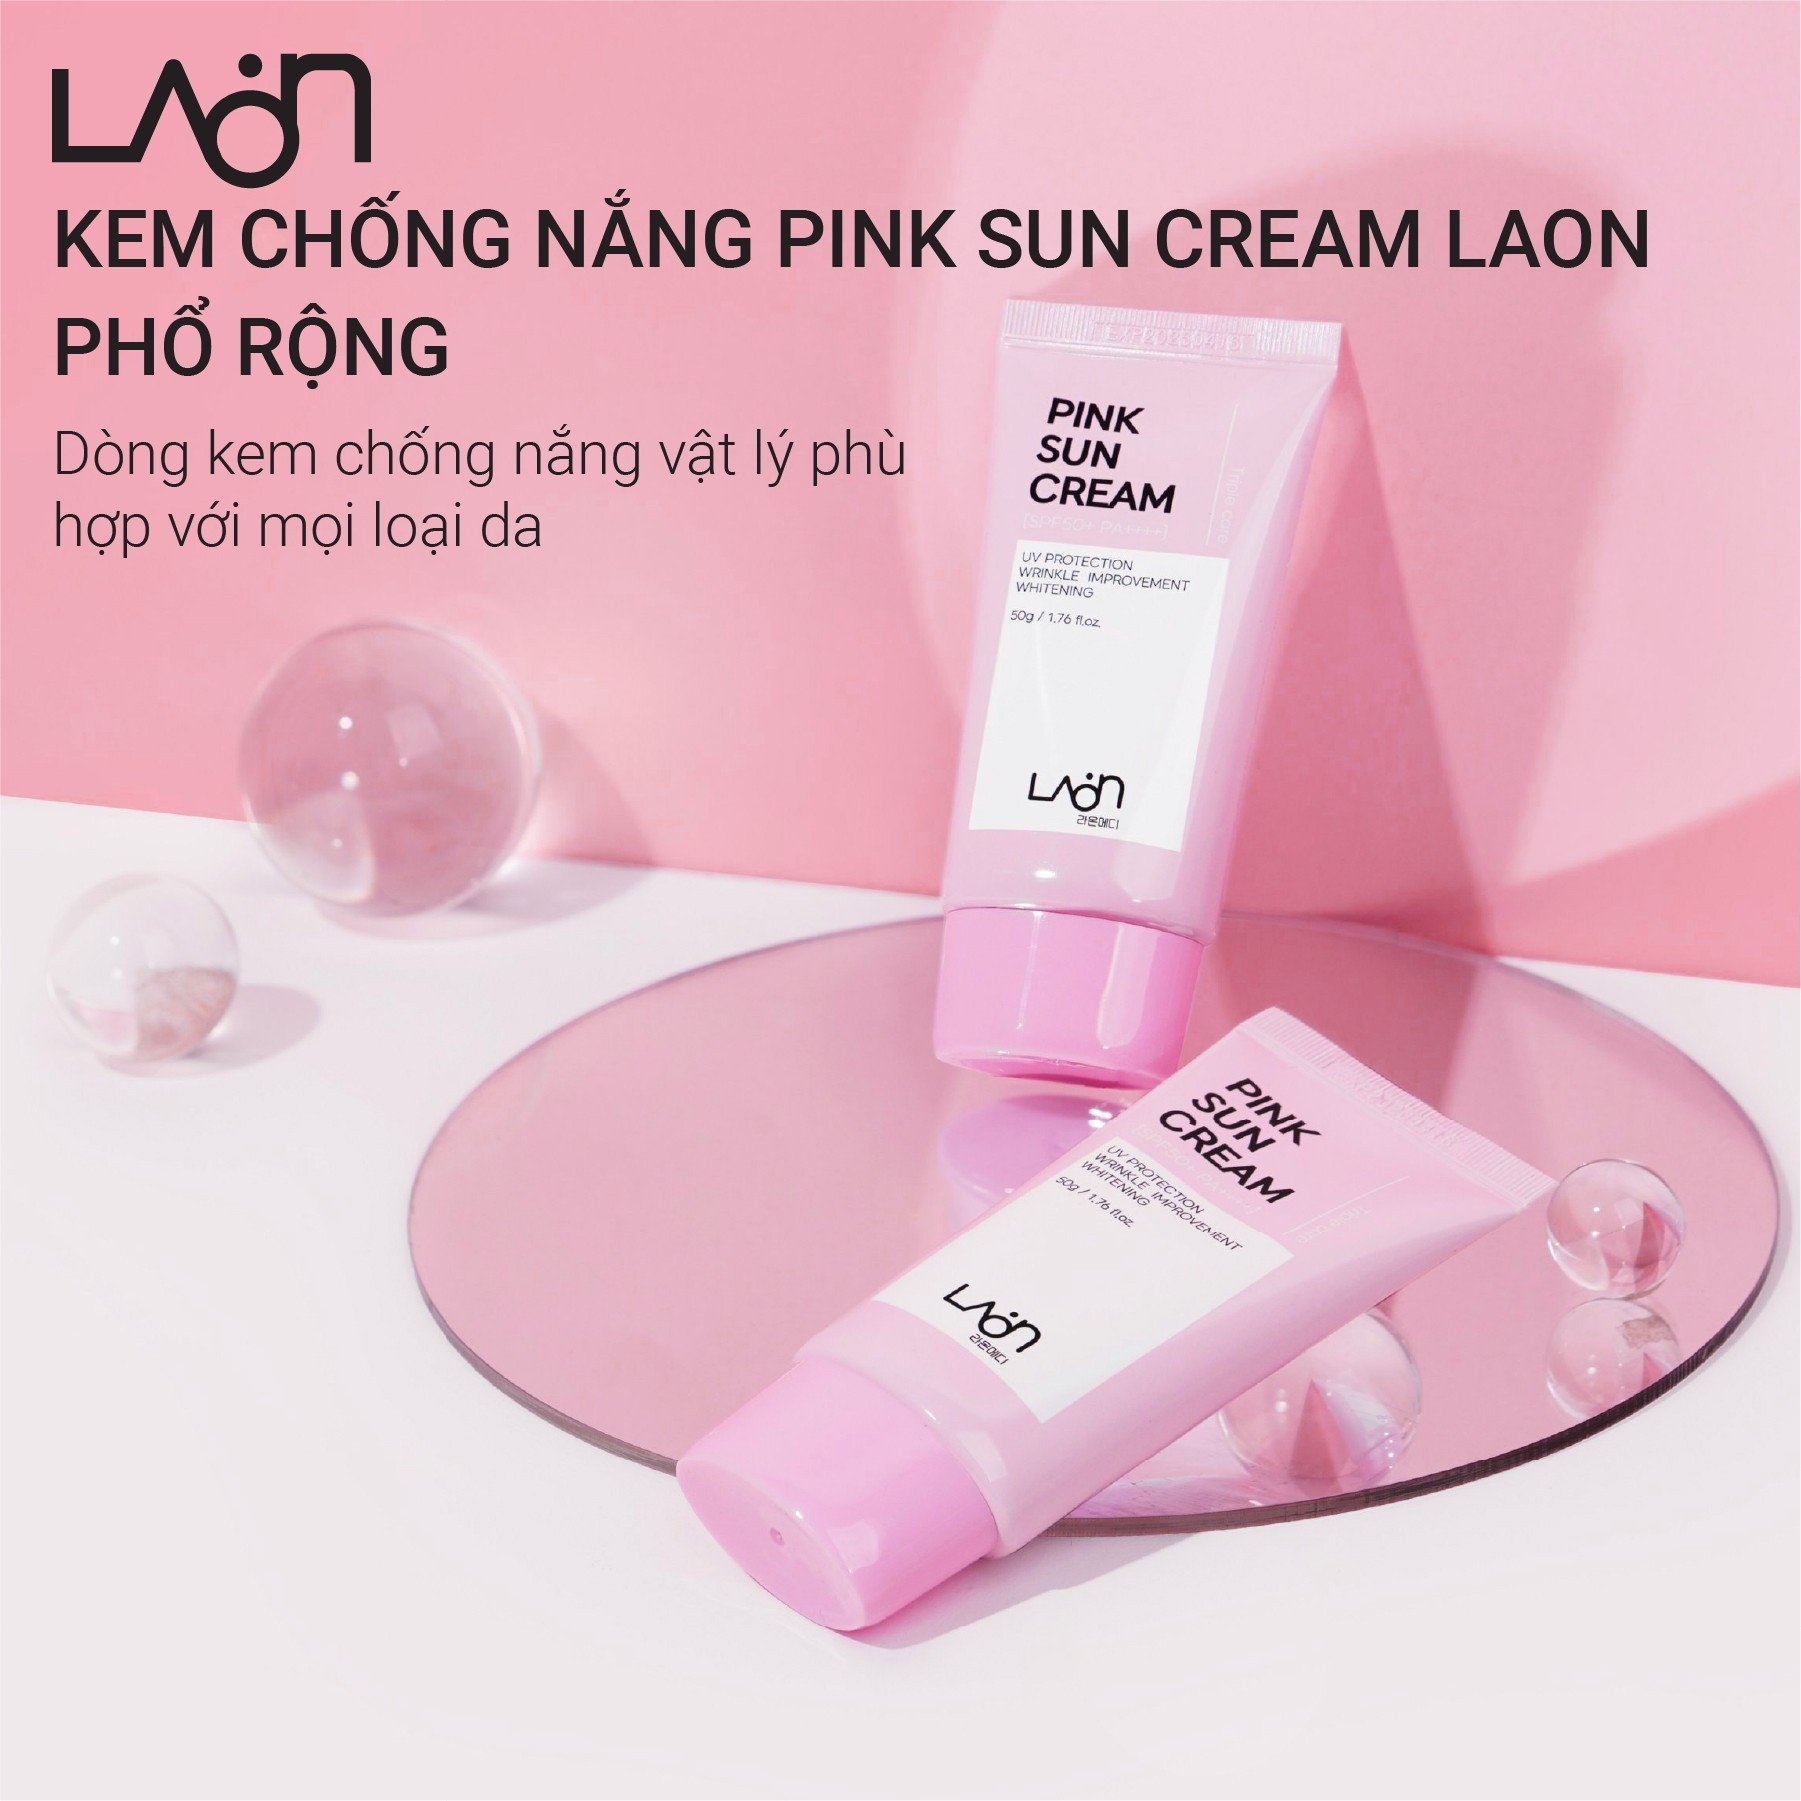 Kem chống nắng pink sun cream phổ rộng 50g, kem chống nắng vật lý phù hợp với mọi loại da